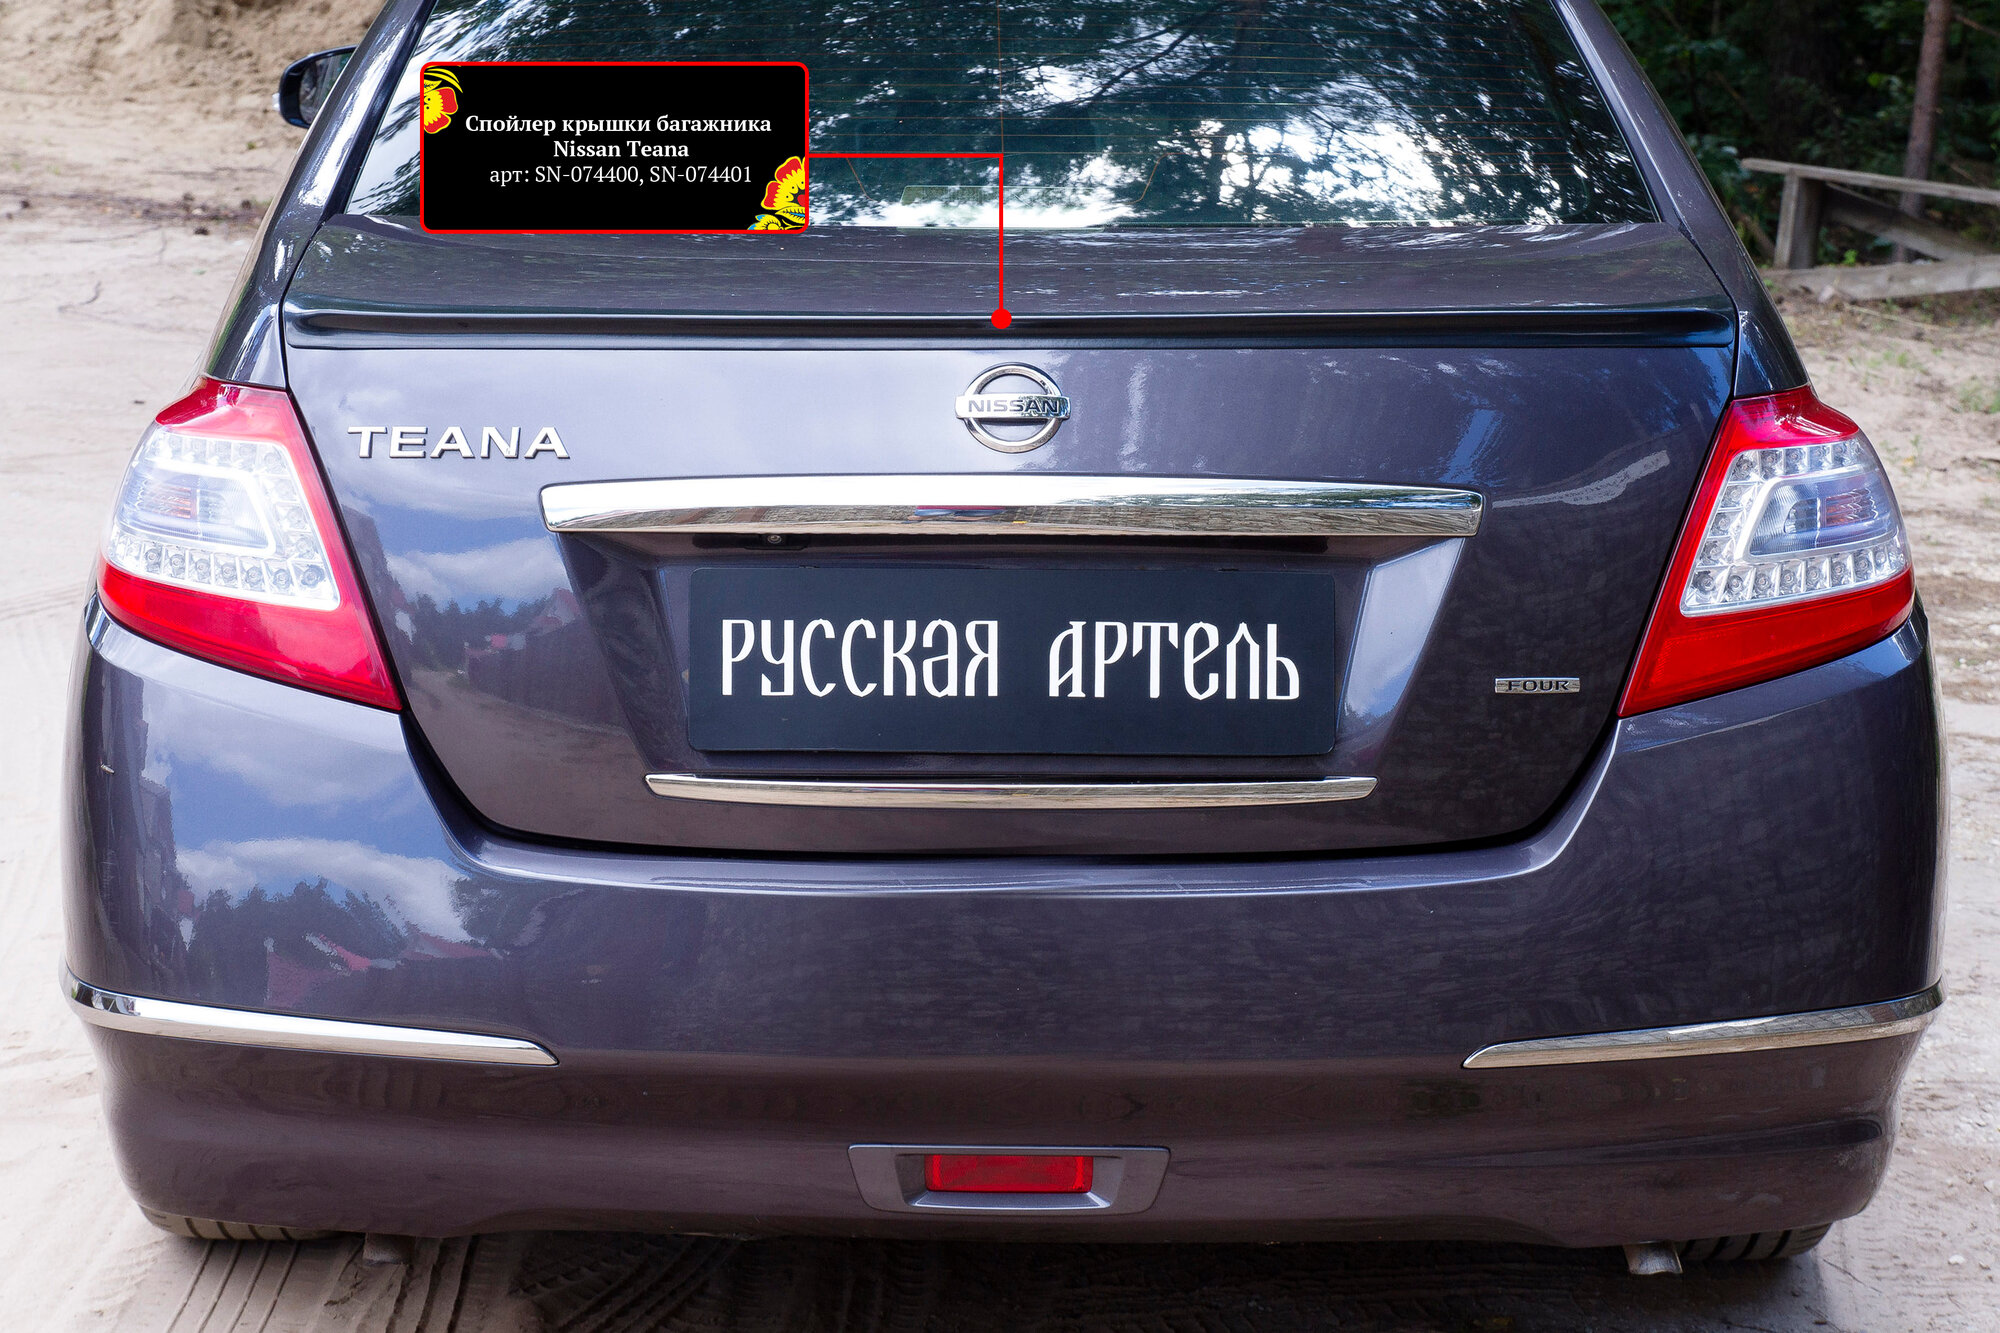 Накладка на дверь багажника для Ниссан Теана j32 2011-2014 год выпуска (Nissan Teana J32) Русская Артель SN-074400